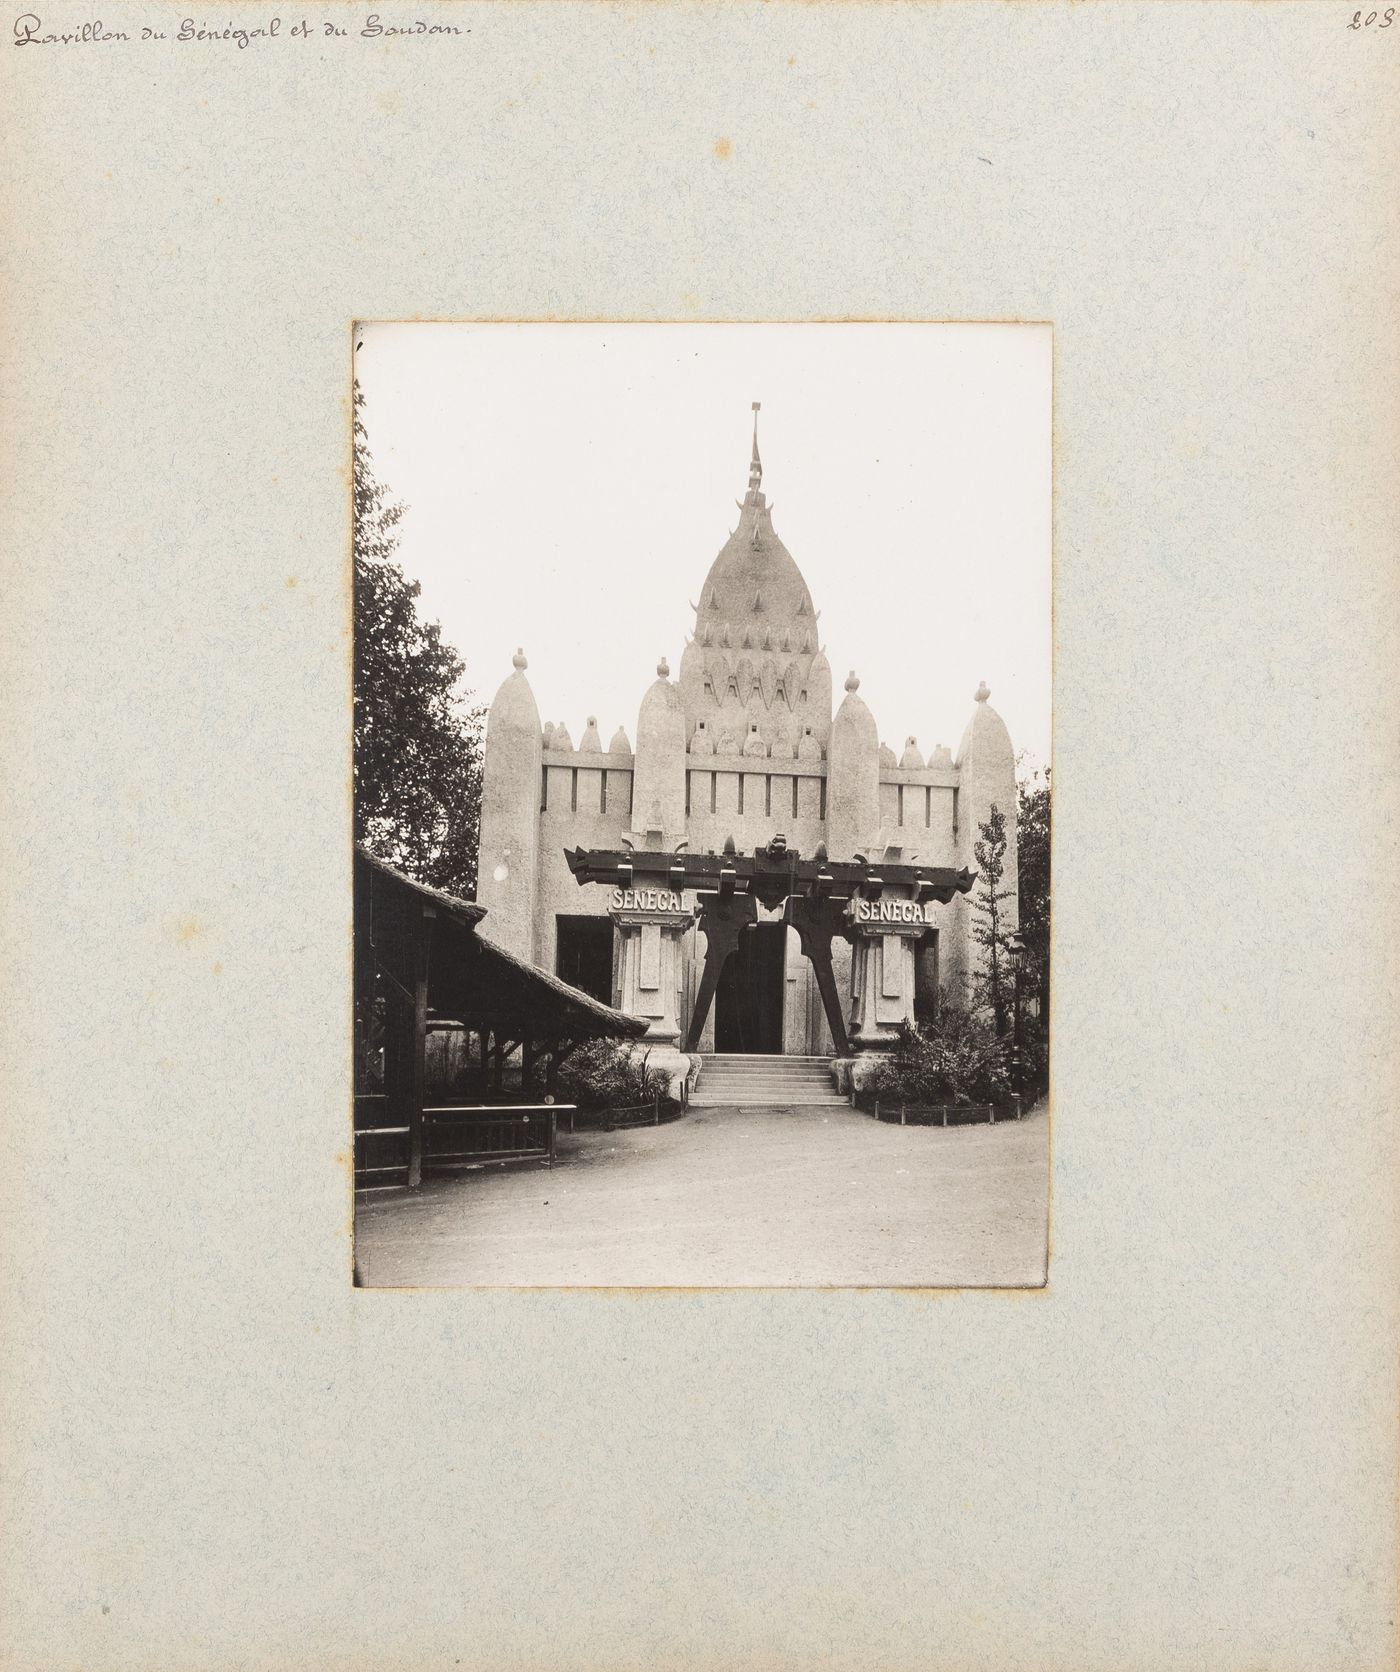 View of Pavillon du Sénégal et du Soudan, Exposition universelle, 1900, Paris, France